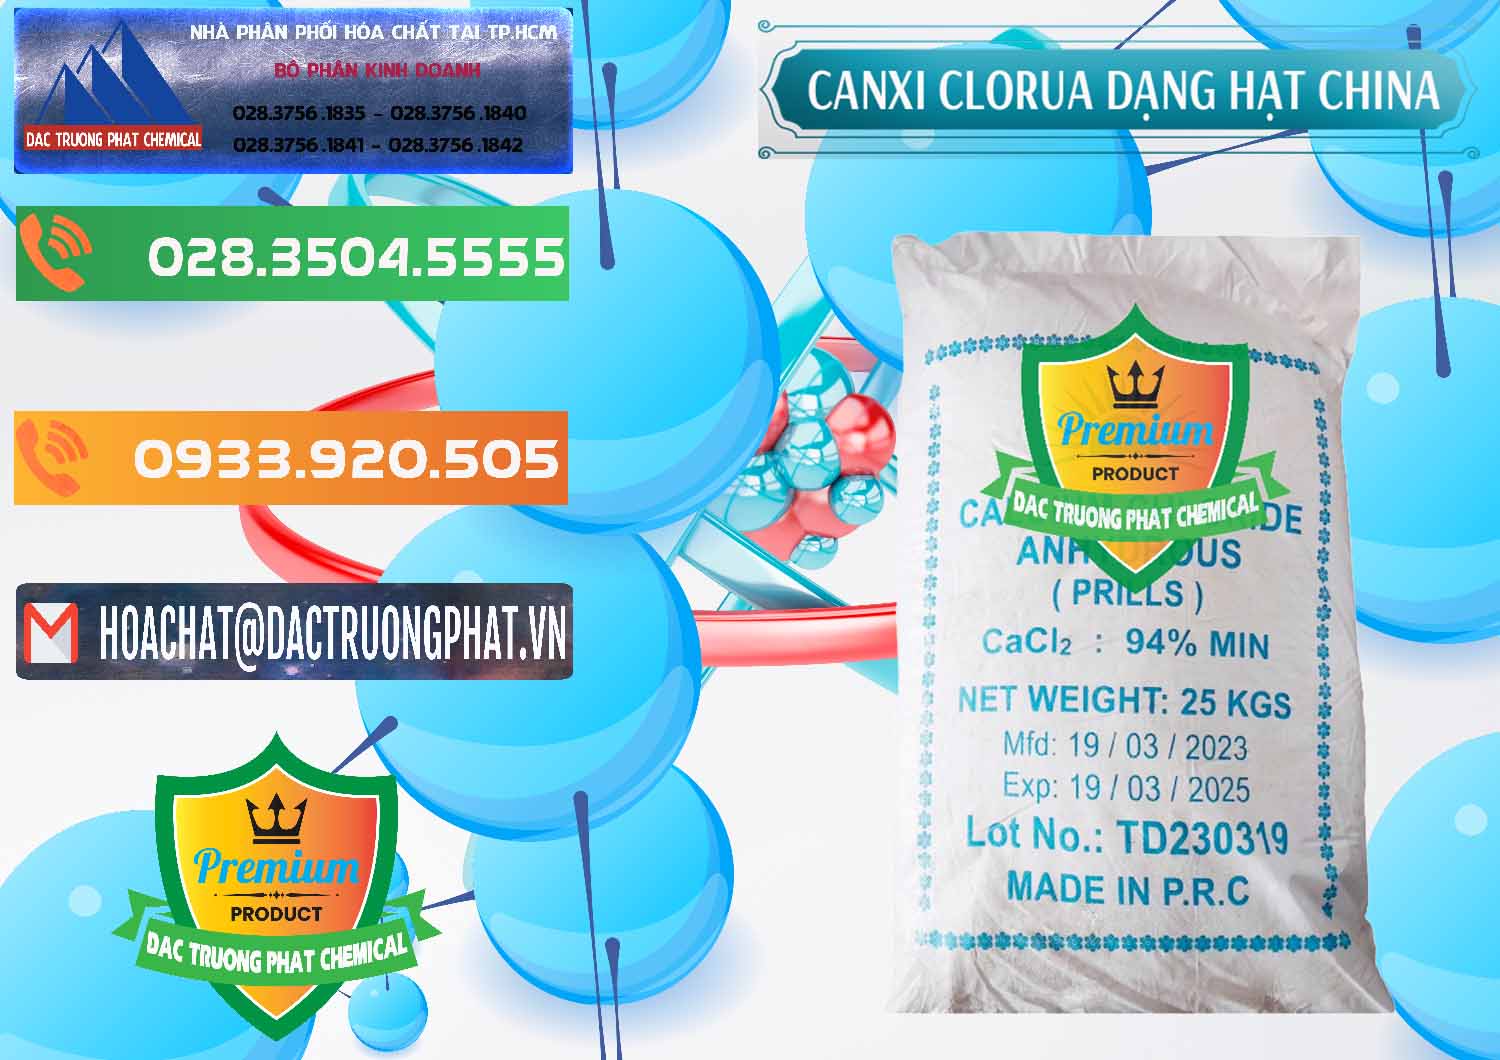 Nơi chuyên bán & cung ứng CaCl2 – Canxi Clorua 94% Dạng Hạt Trung Quốc China - 0373 - Đơn vị bán - phân phối hóa chất tại TP.HCM - hoachatxulynuoc.com.vn